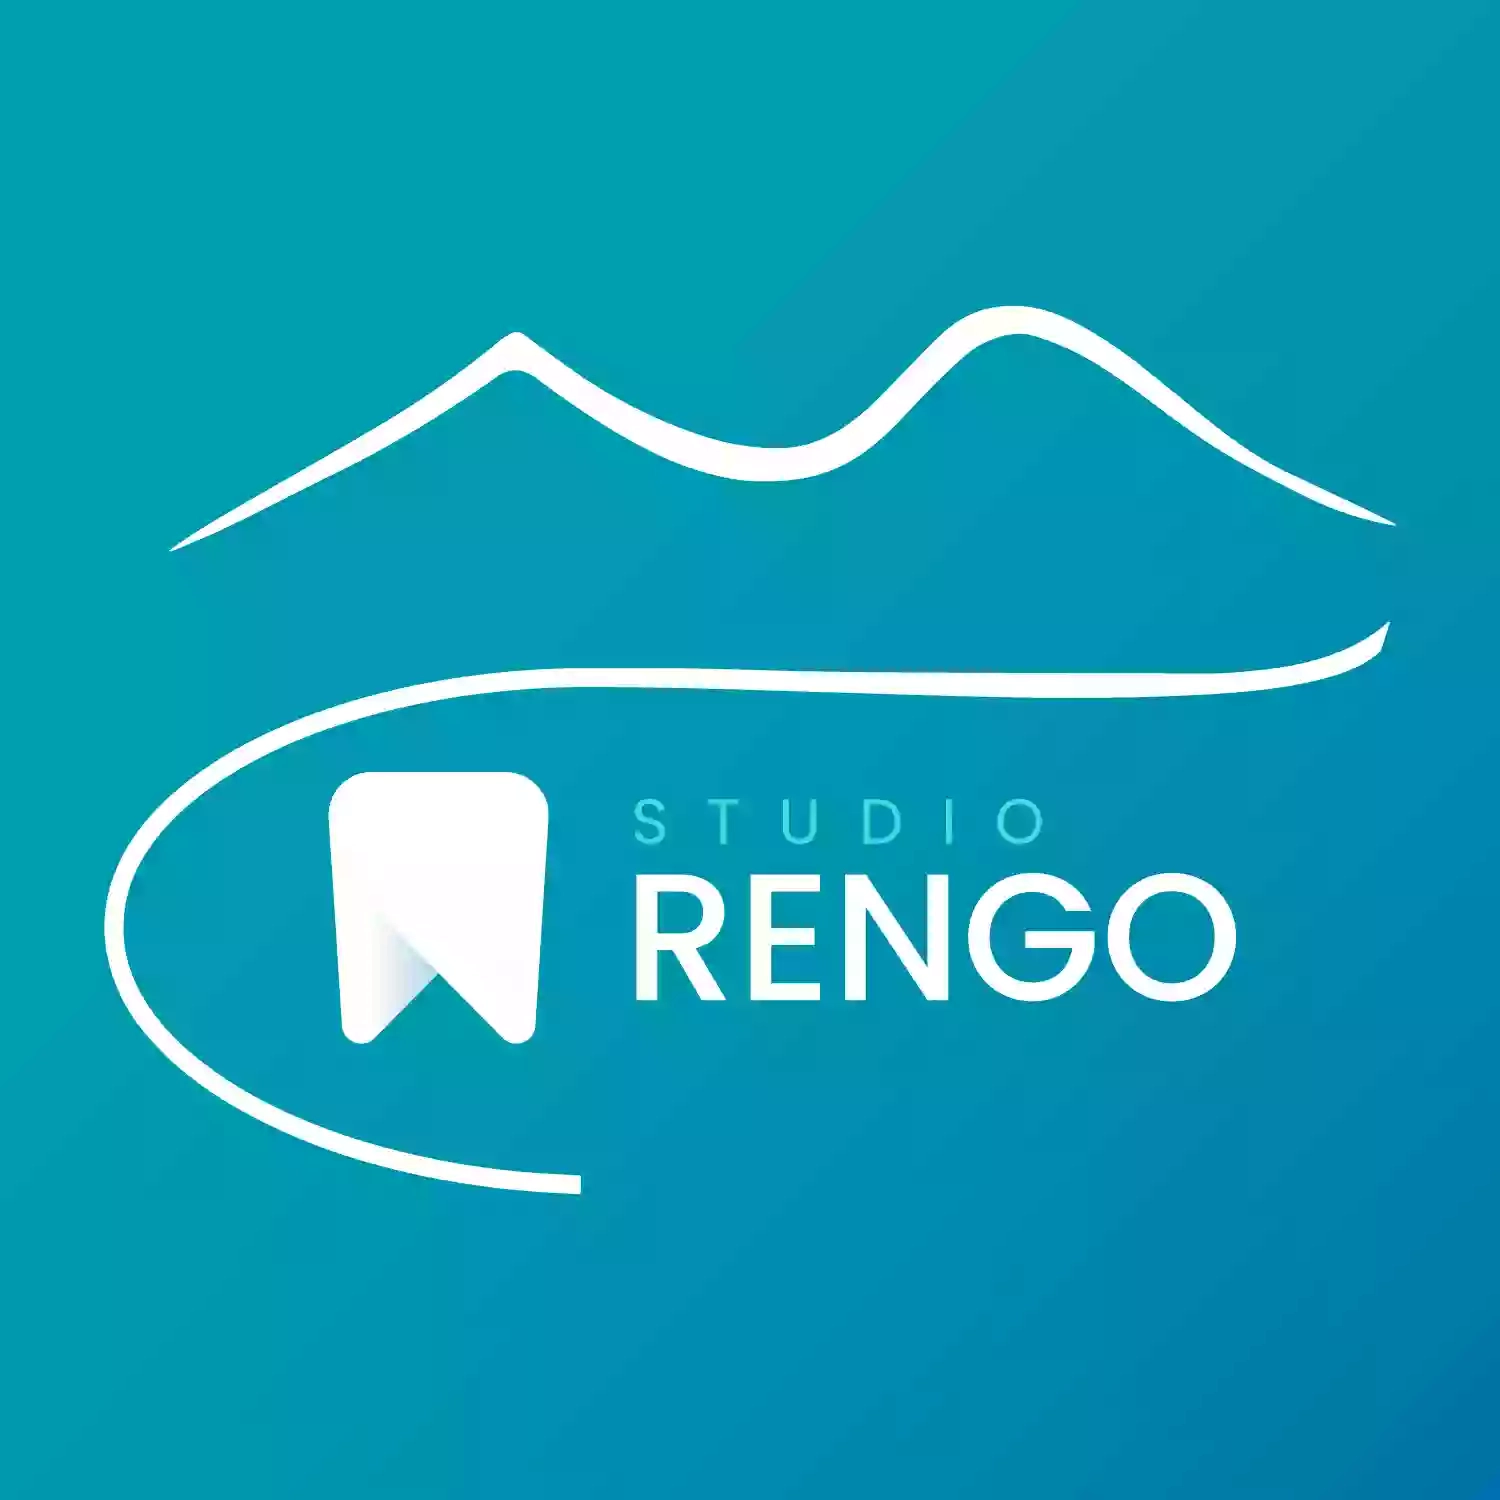 Dr. Rengo